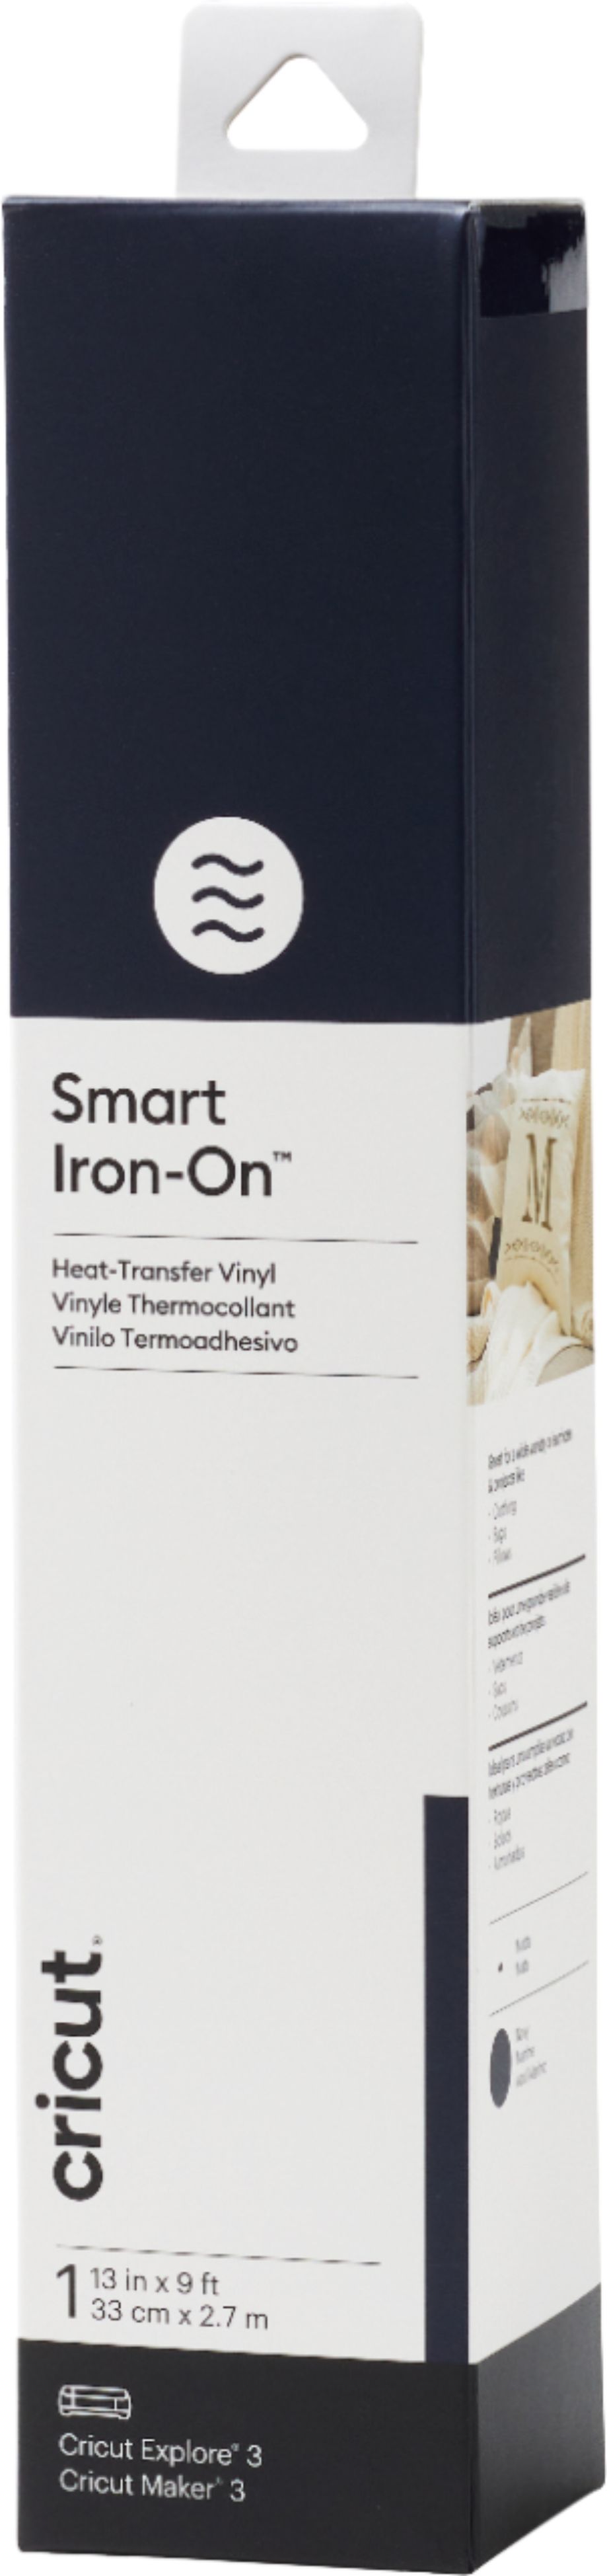 Cricut Iron-On Heat Transfer Vinyl